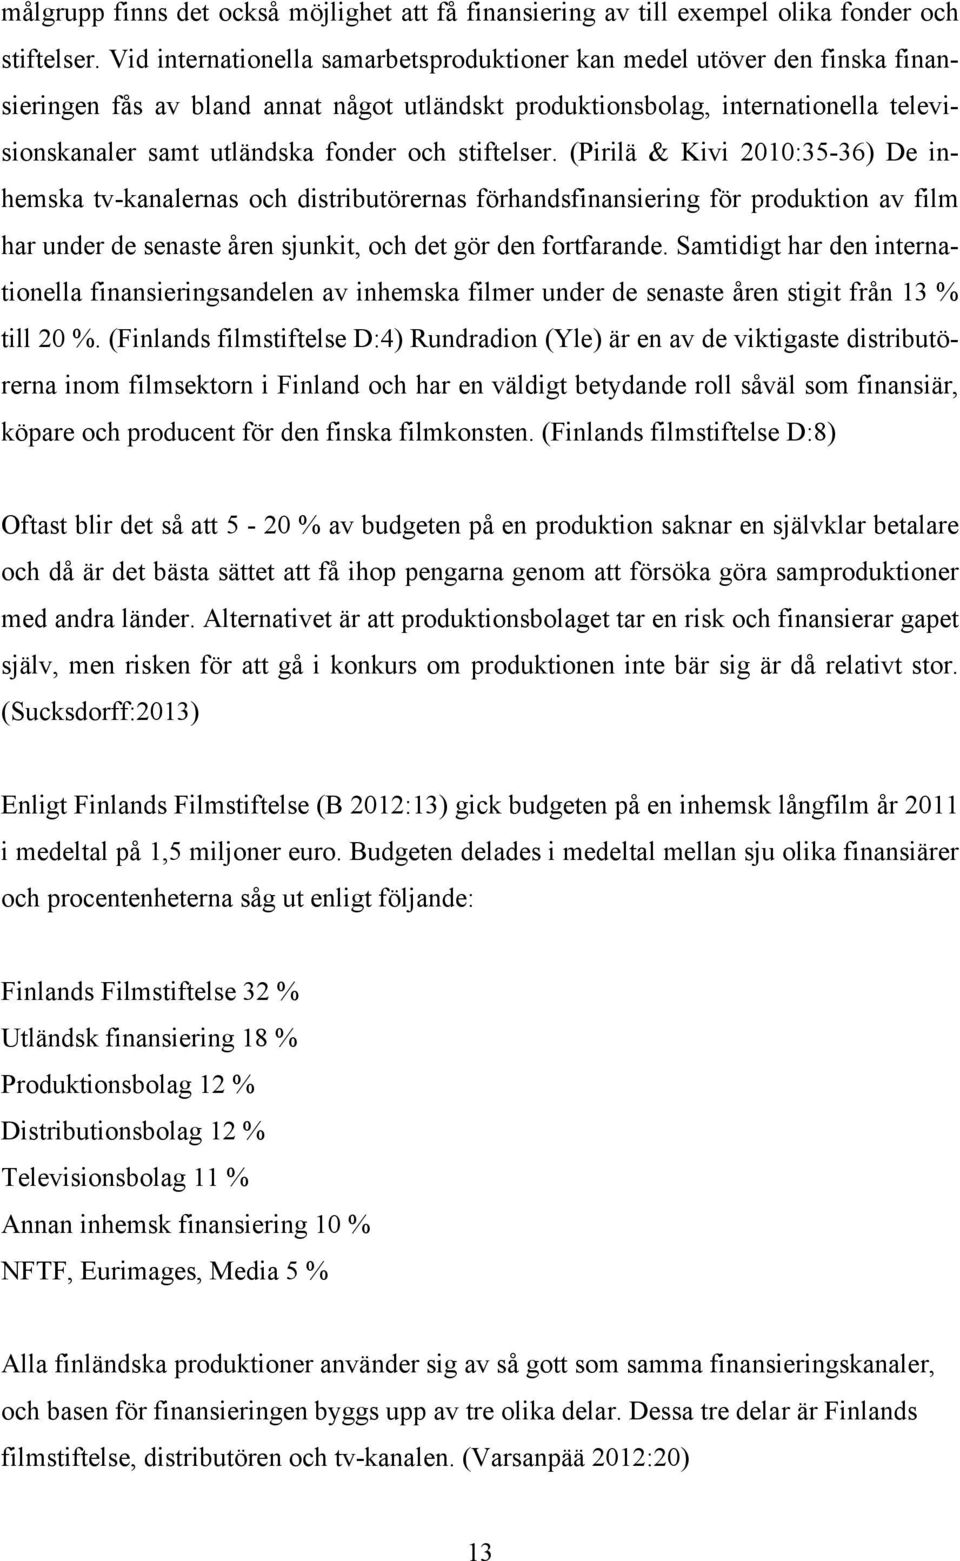 stiftelser. (Pirilä & Kivi 2010:35-36) De inhemska tv-kanalernas och distributörernas förhandsfinansiering för produktion av film har under de senaste åren sjunkit, och det gör den fortfarande.